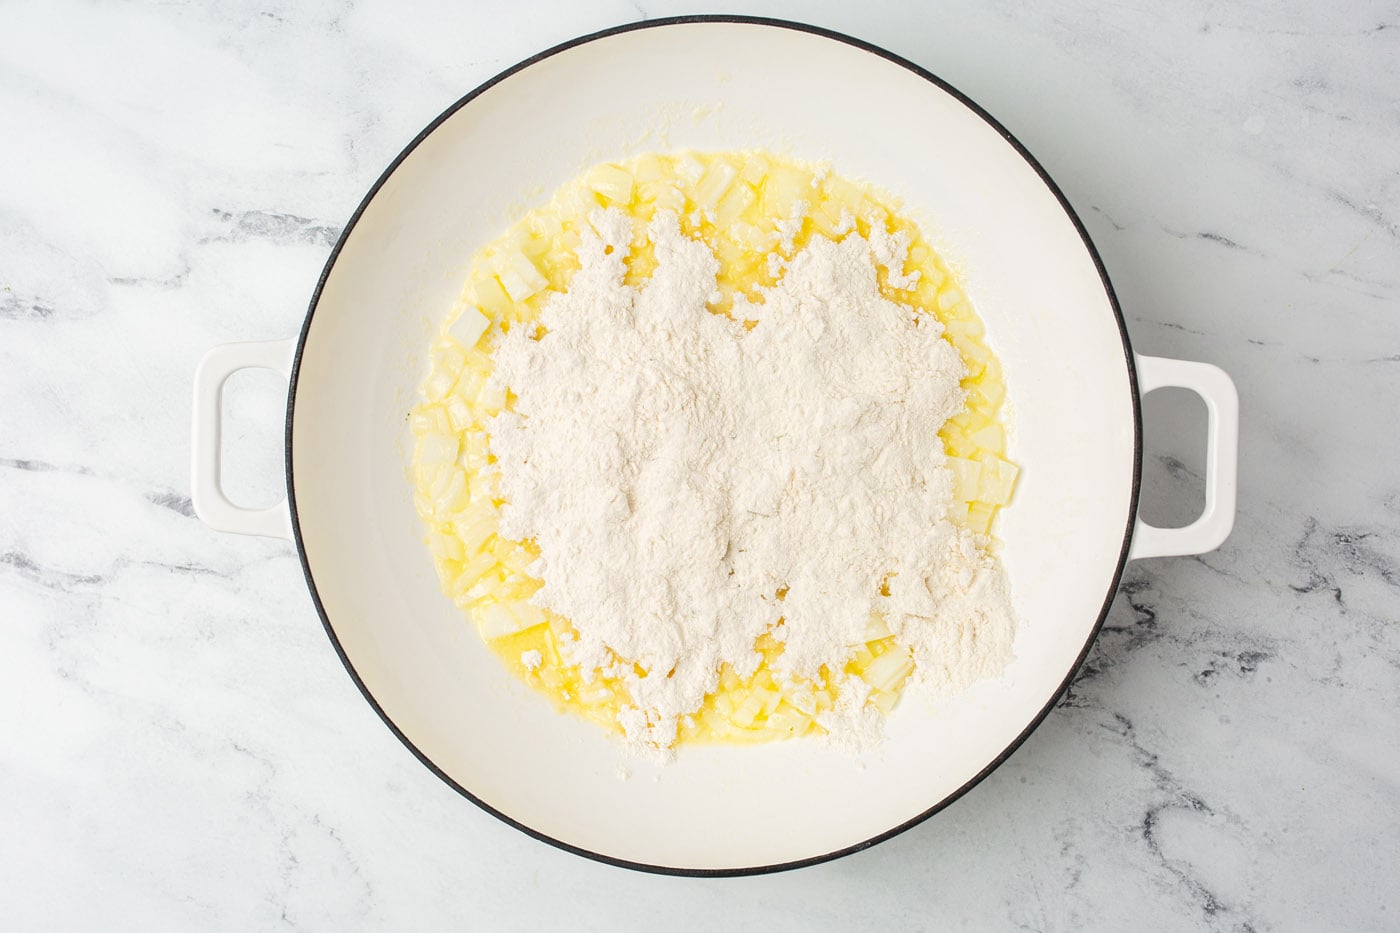 flour over butter in a saucepan